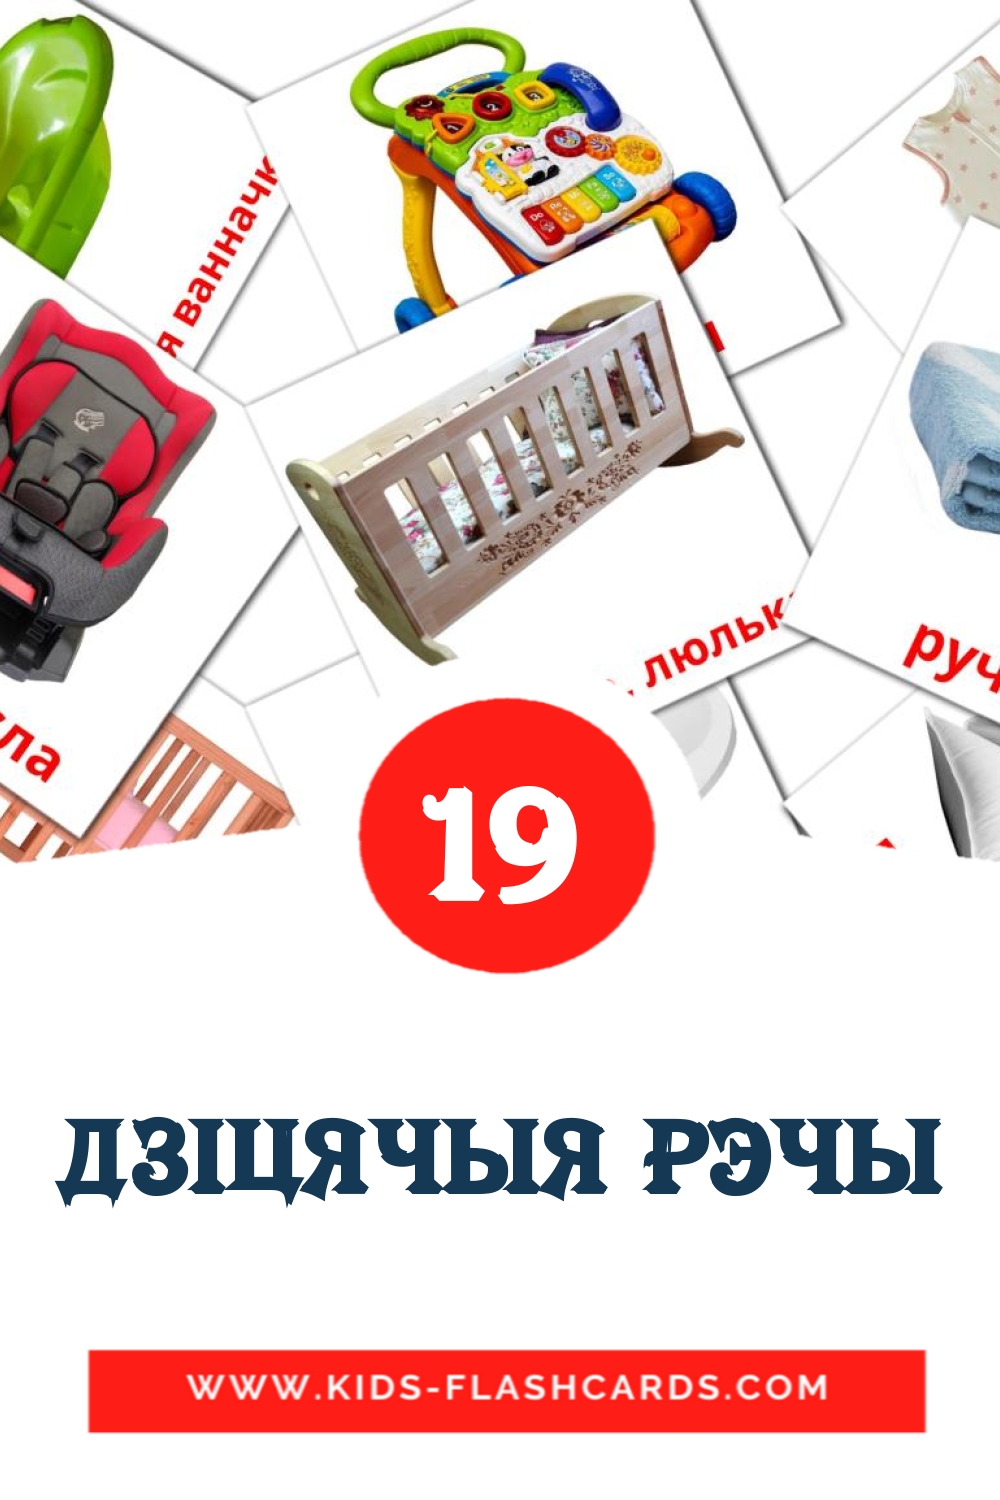 19 дзiцячыя рэчы Bildkarten für den Kindergarten auf Weißrussisch